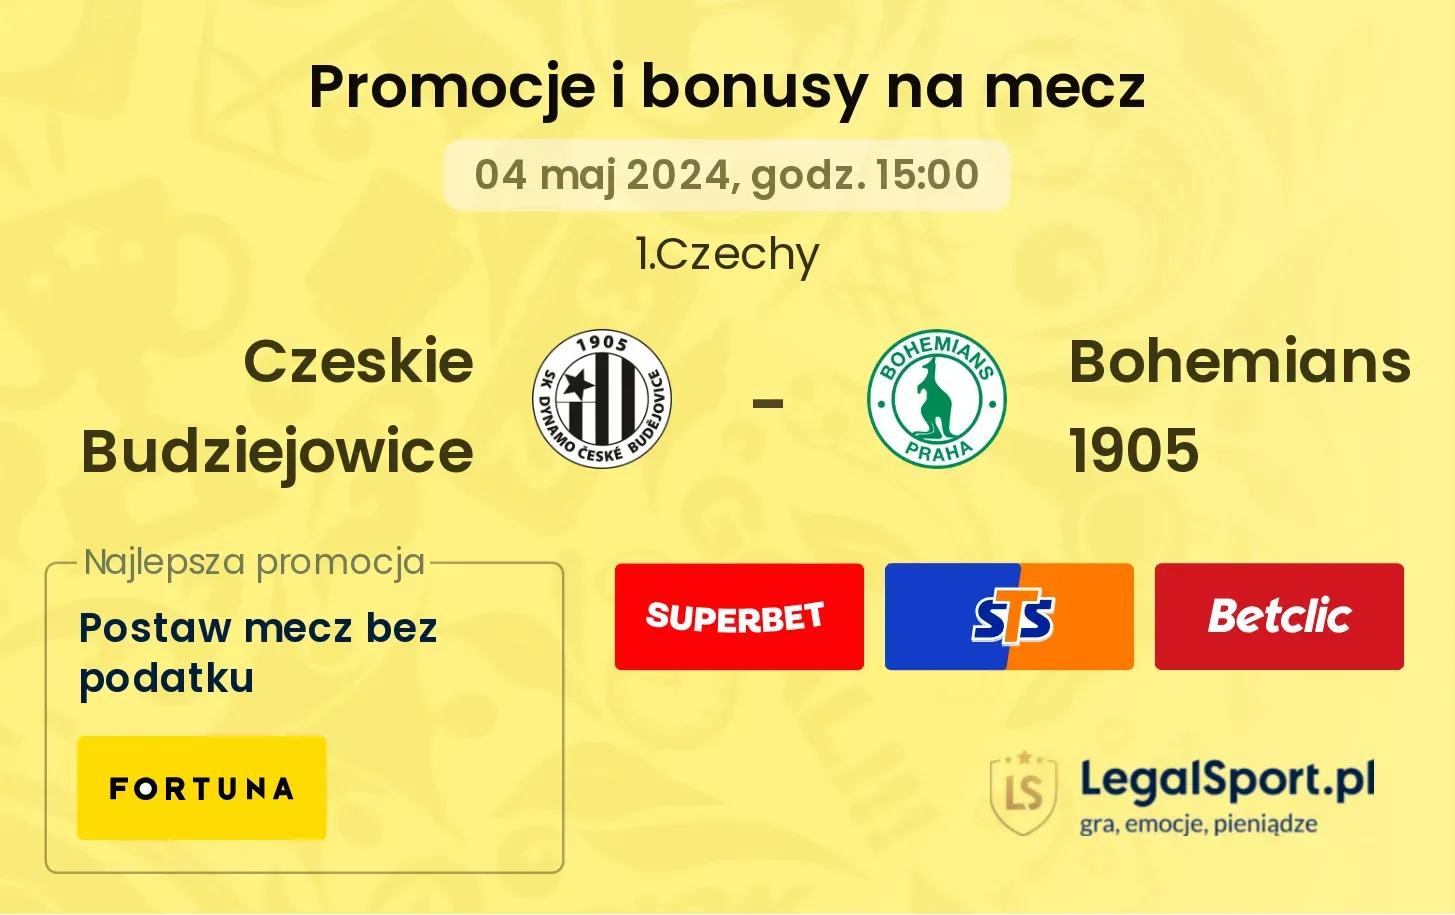 Czeskie Budziejowice - Bohemians 1905 promocje bonusy na mecz